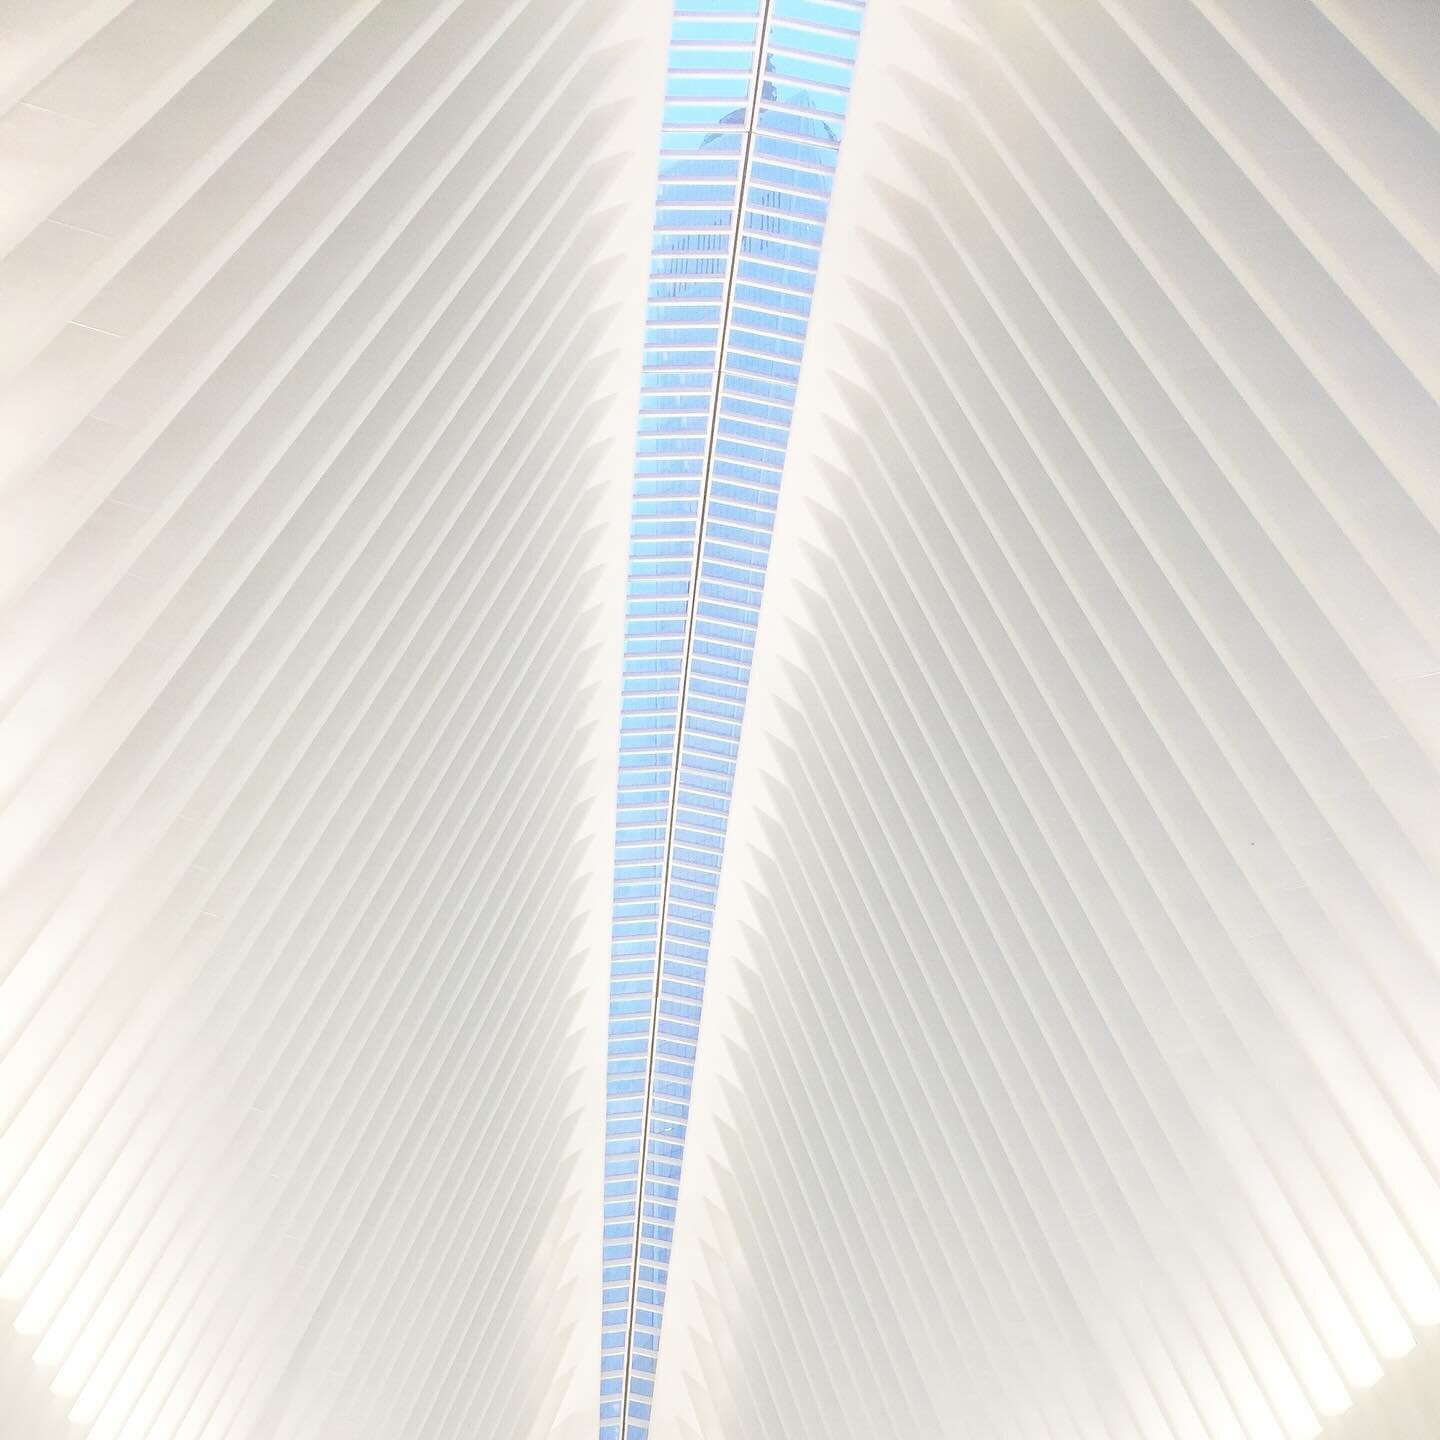 The Oculus in New York City.
#oculus #oculusnyc #oculusnewyorkcity #newyorkcity #usa